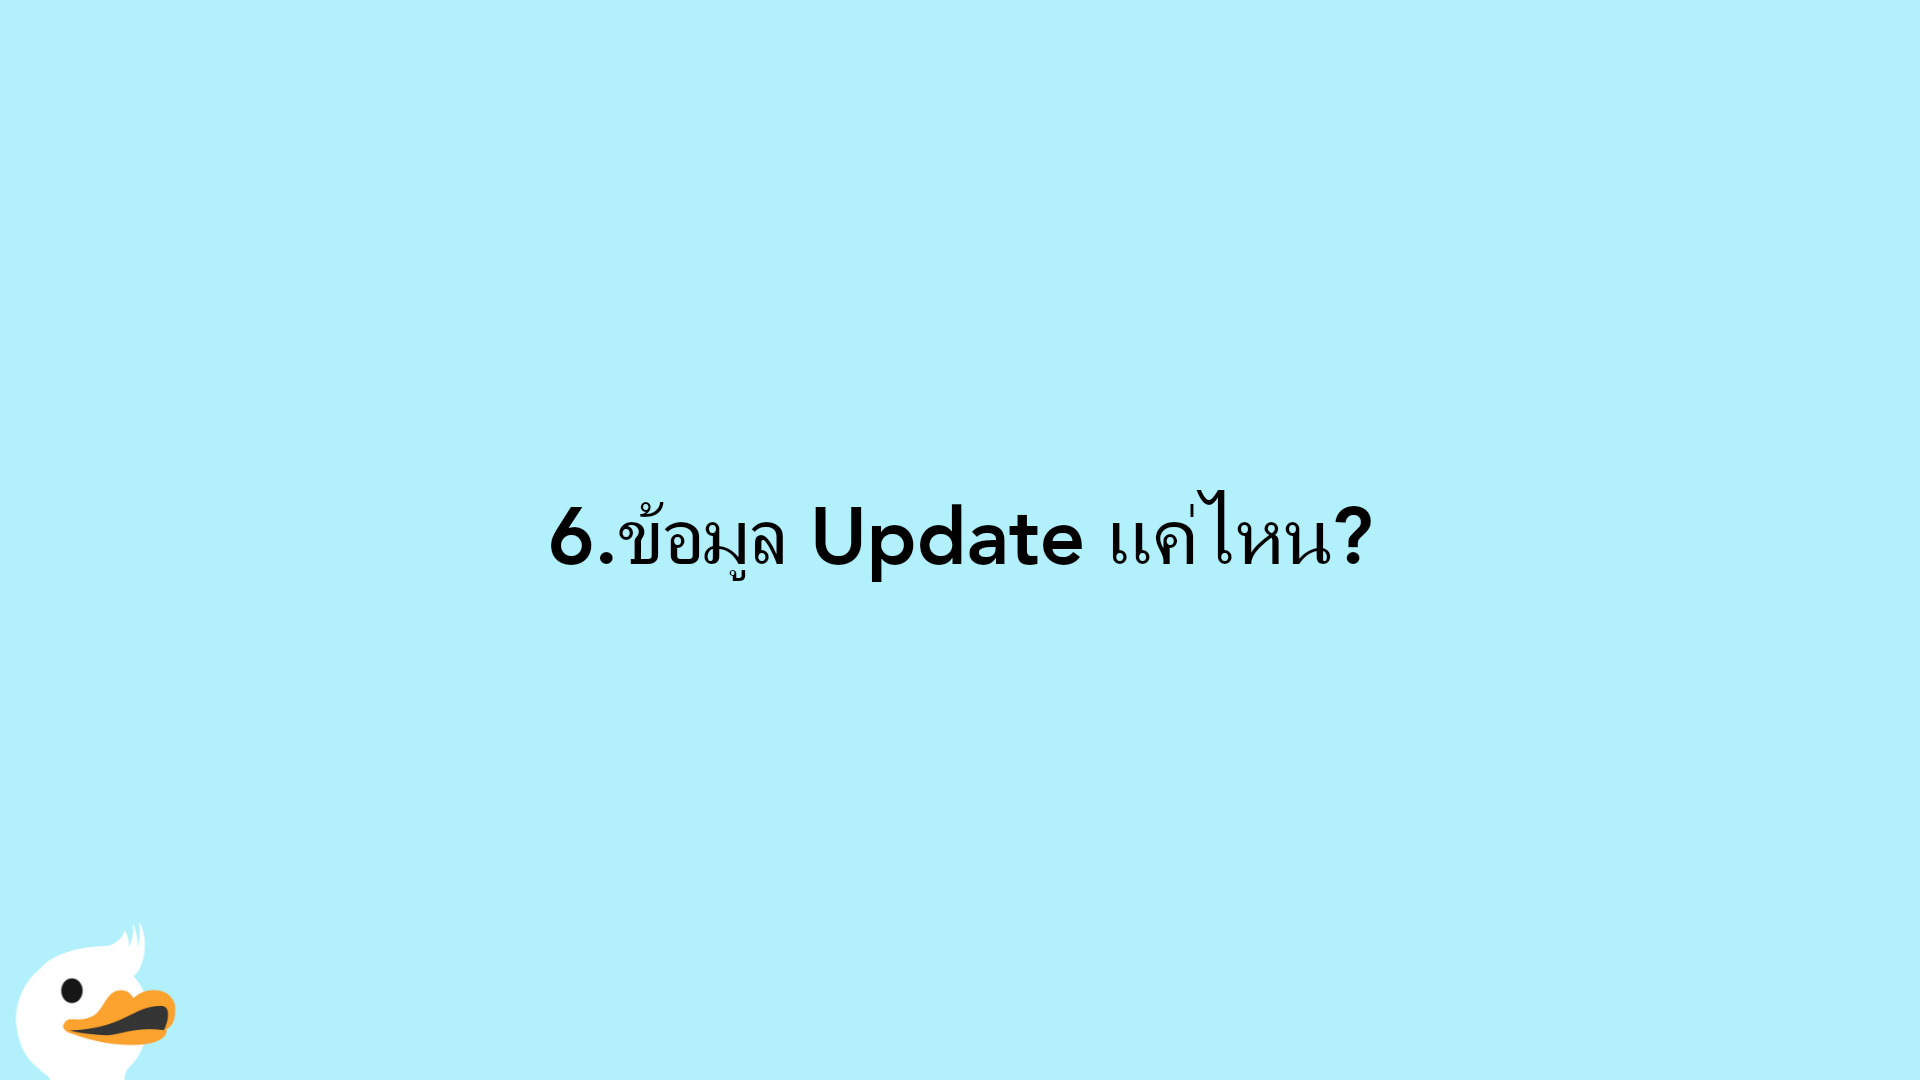 6.ข้อมูล Update แค่ไหน?